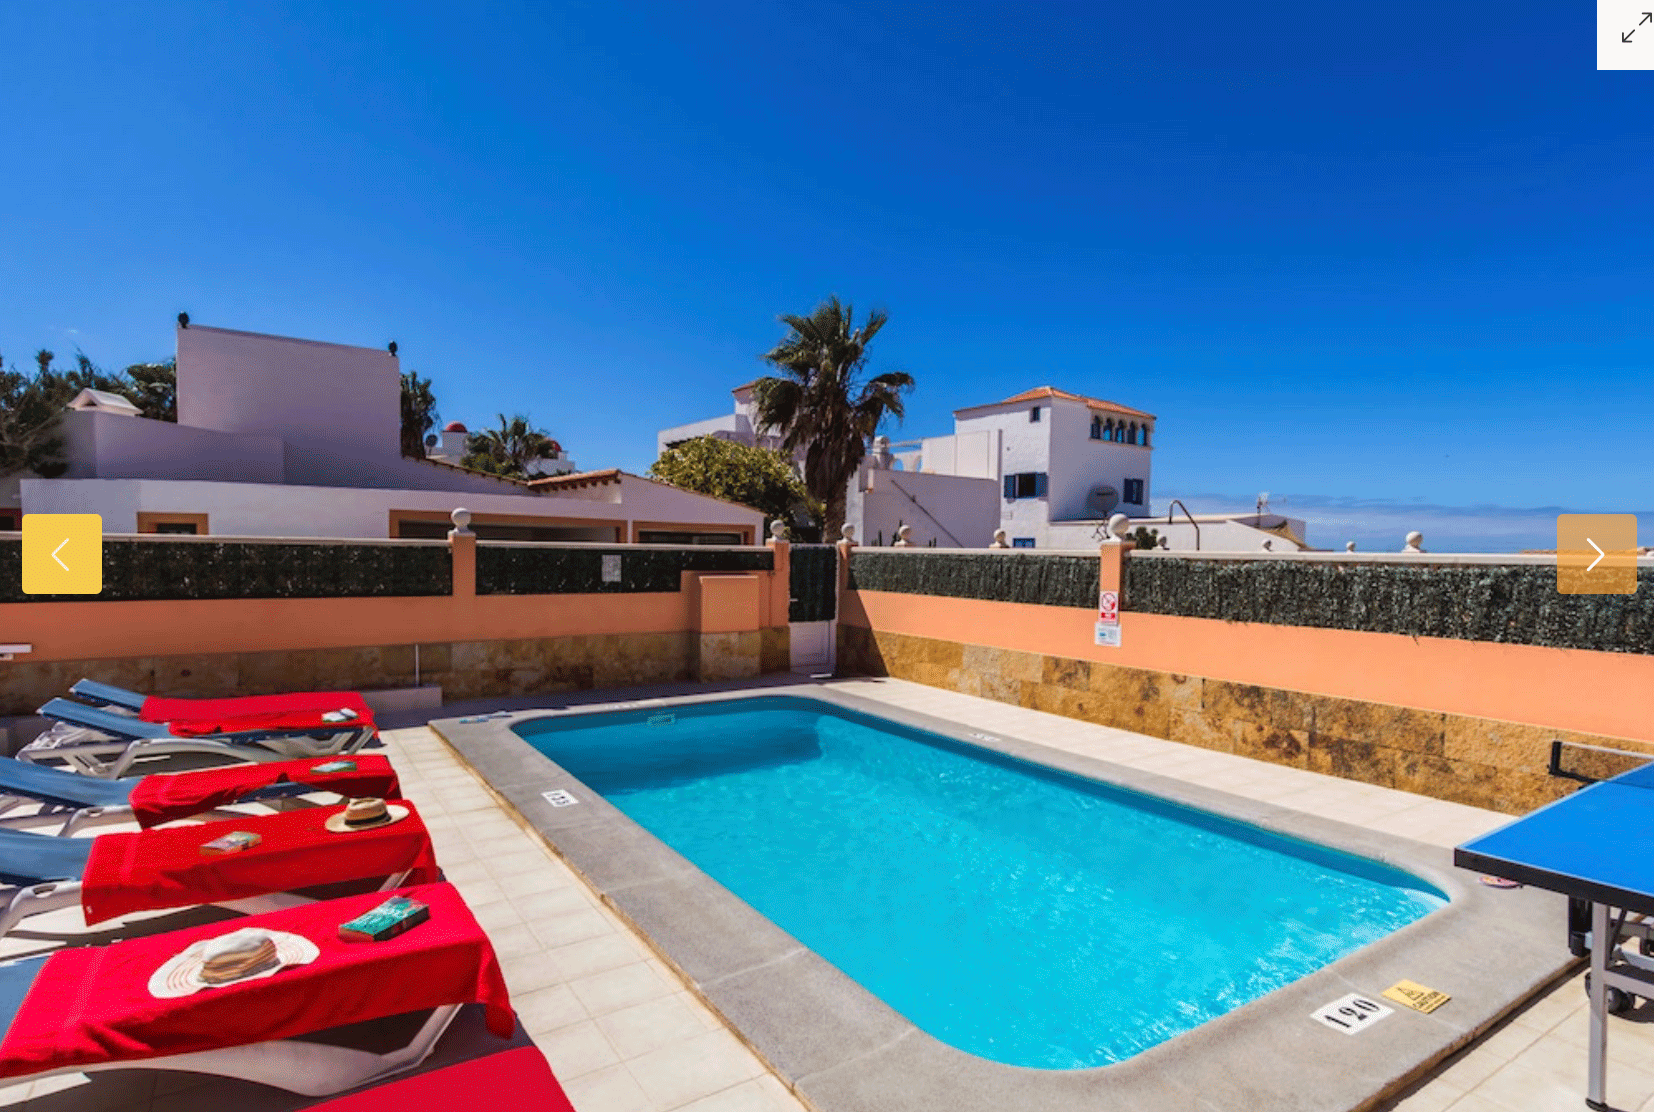 Une fantastique villa en bord de mer avec piscine à vendre à Corralejo